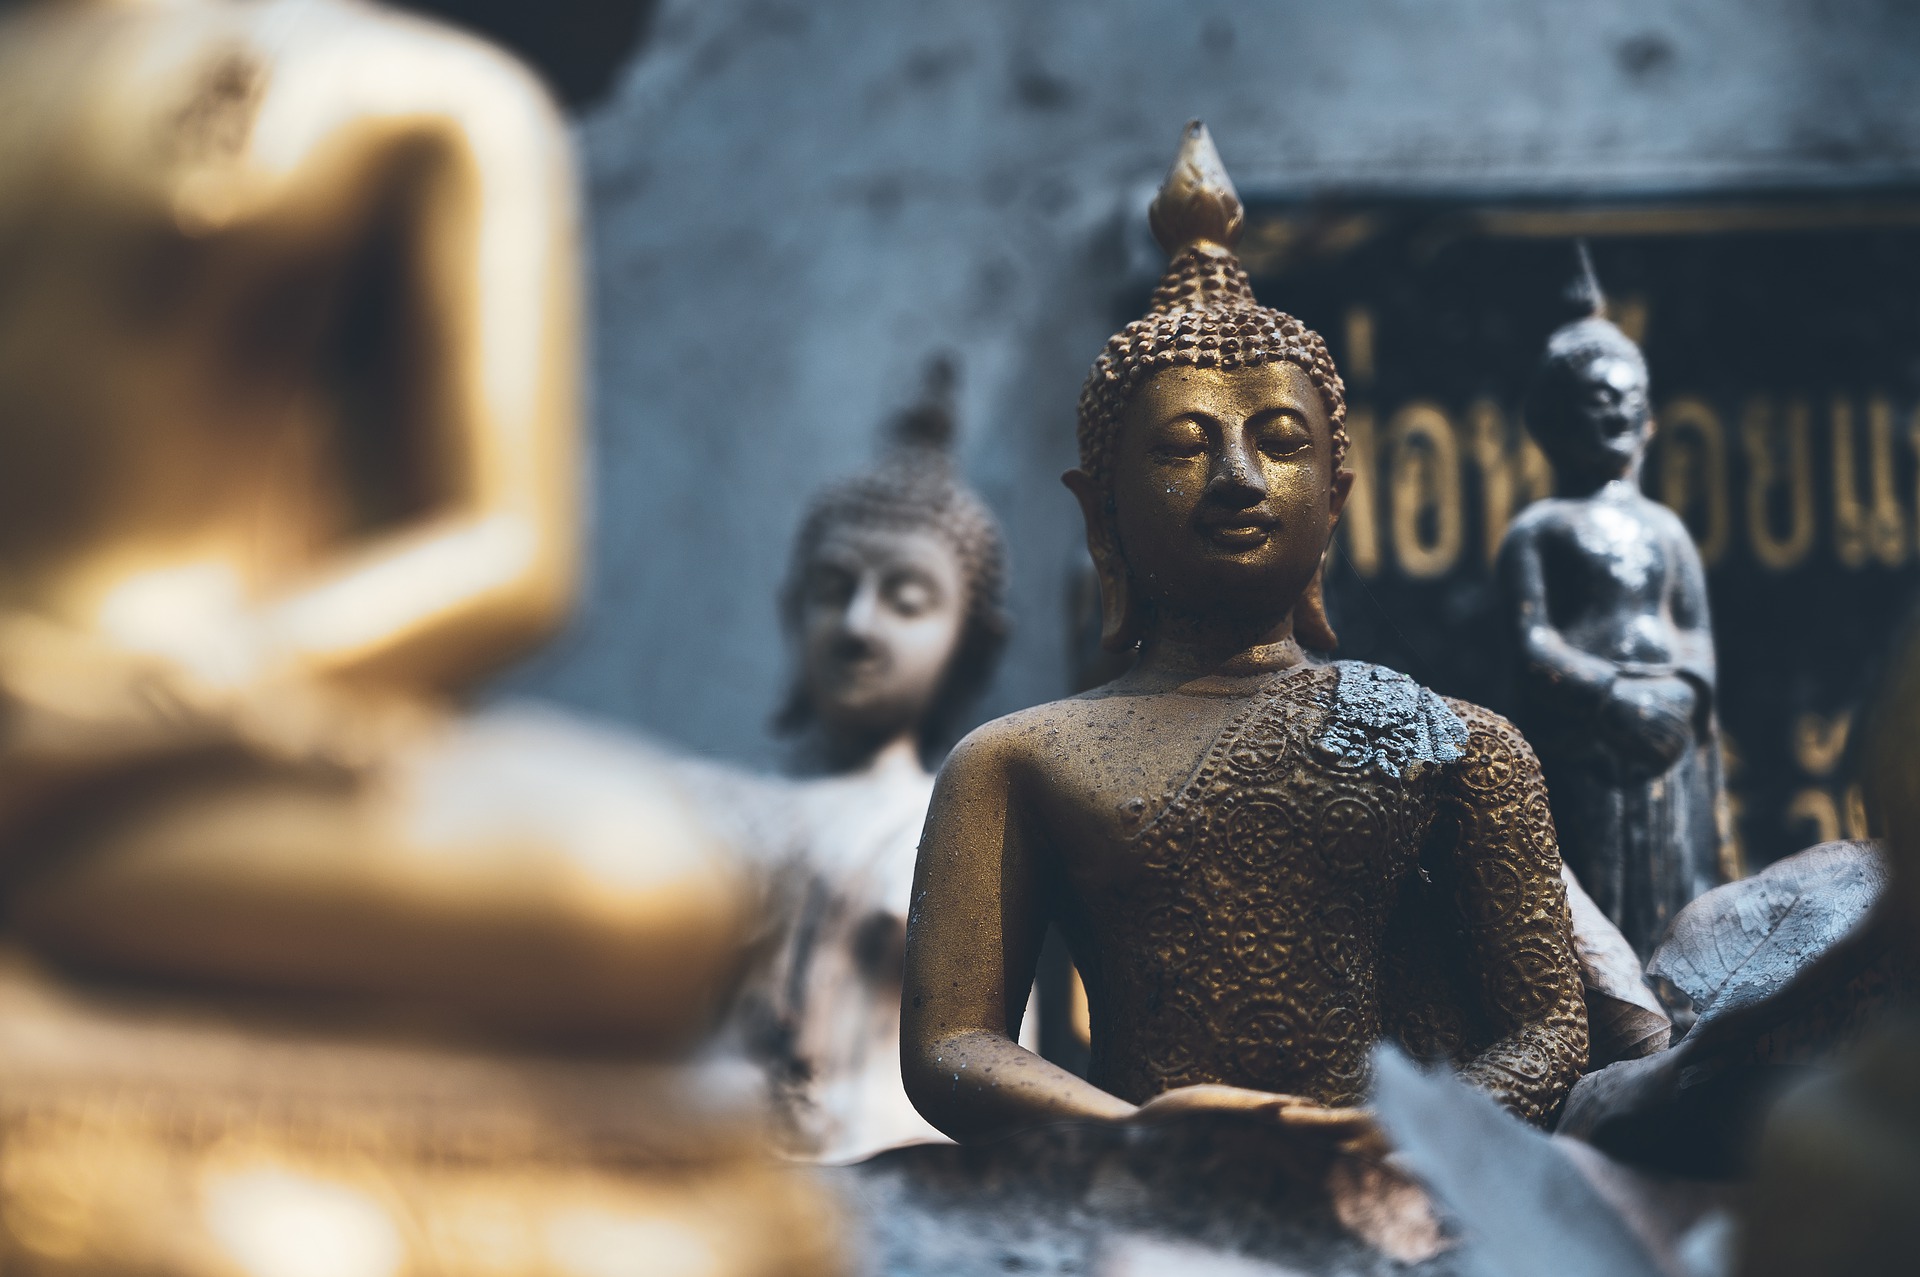 バンコクに行ったら必ず行きたいおすすめの寺院5選